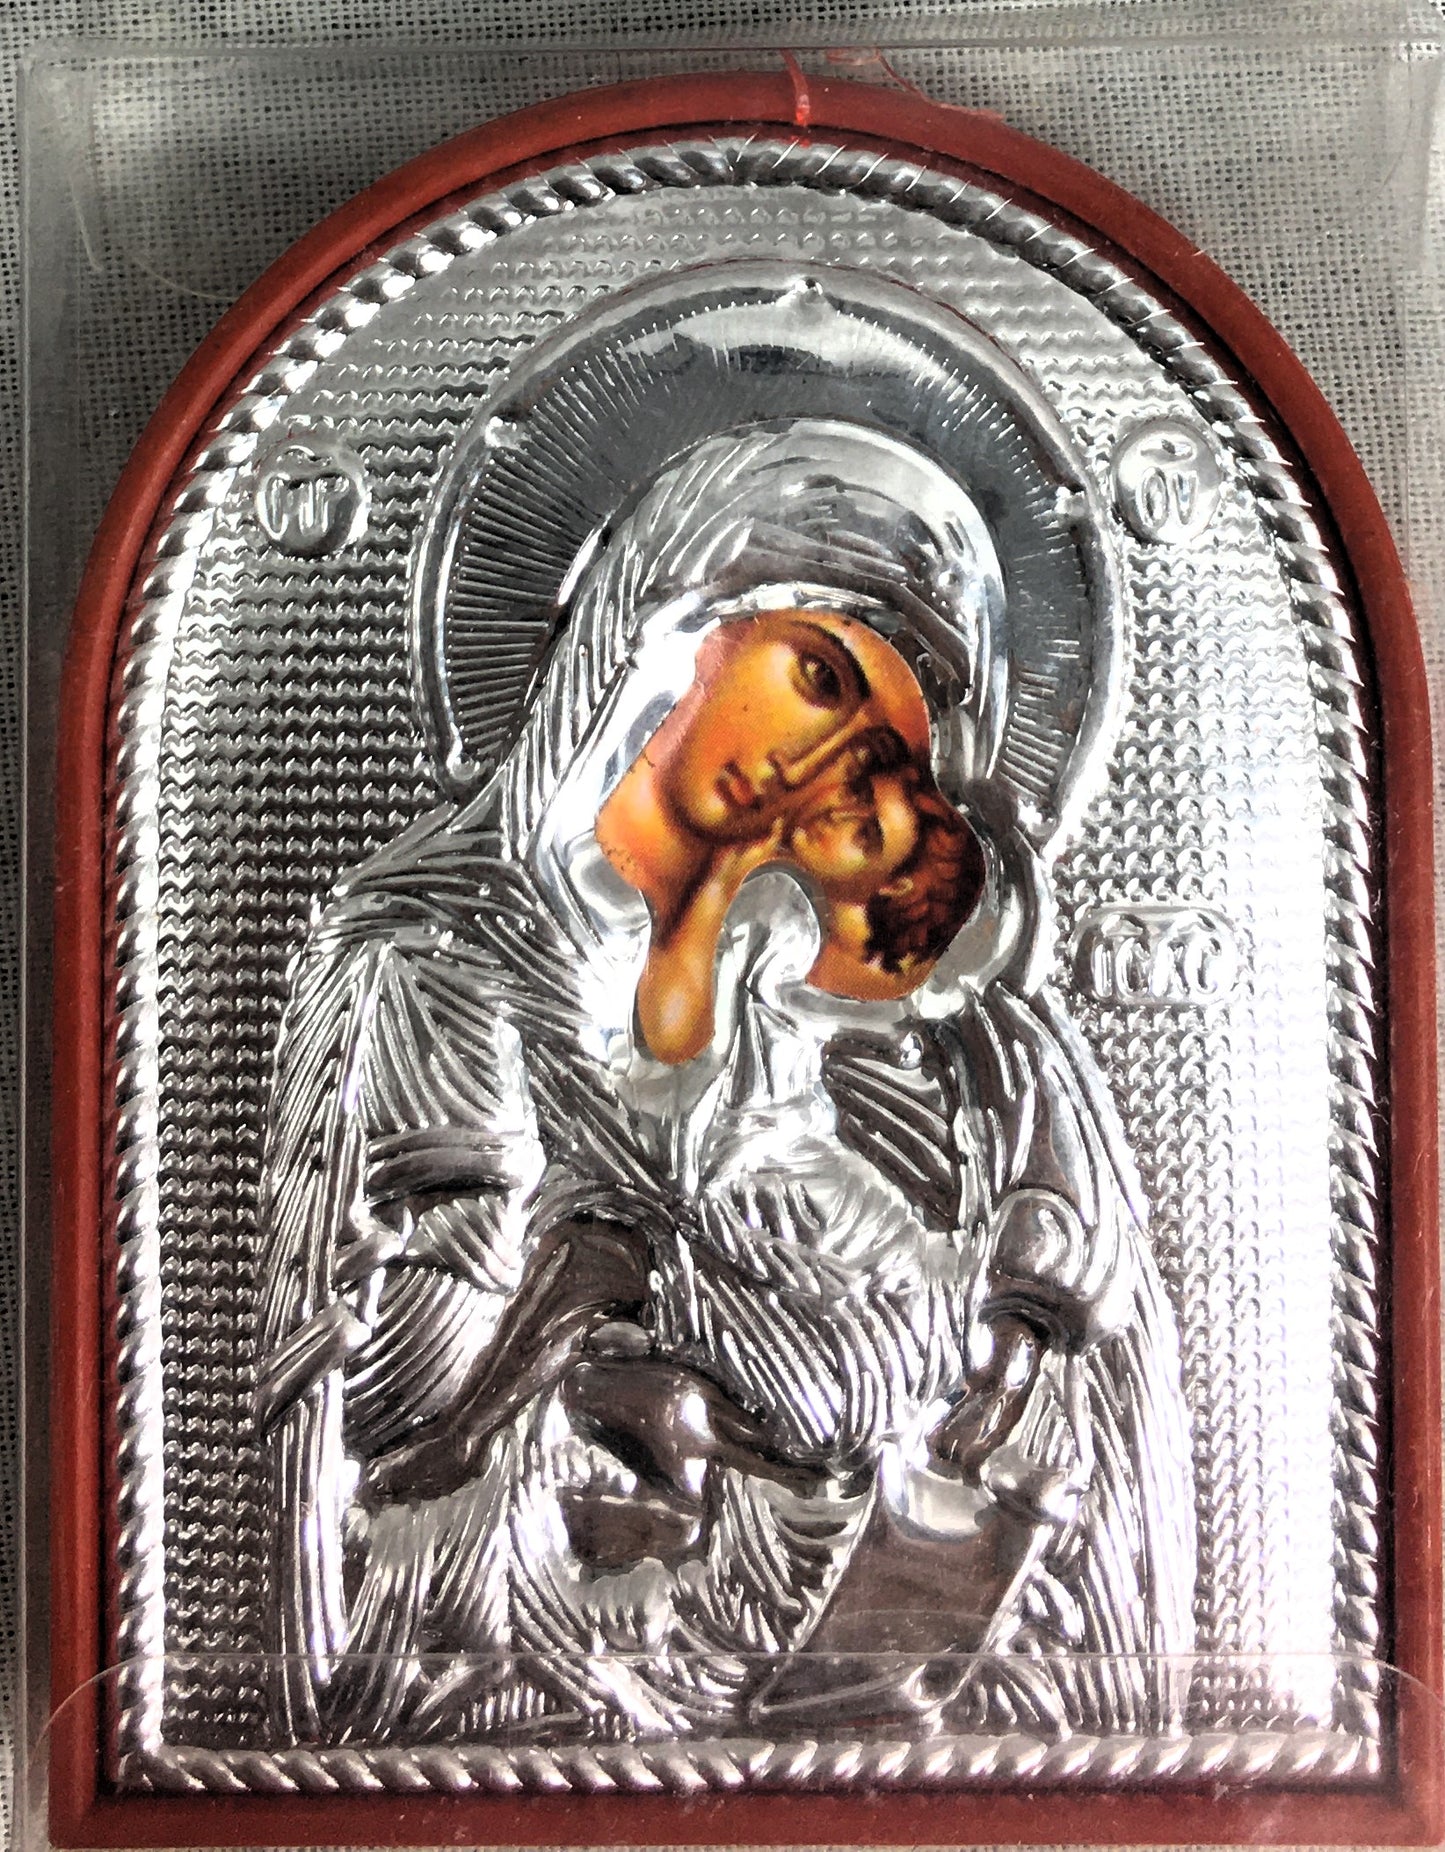 Theotokos - Sweet Kissing, Small Rounded Metallic Icon